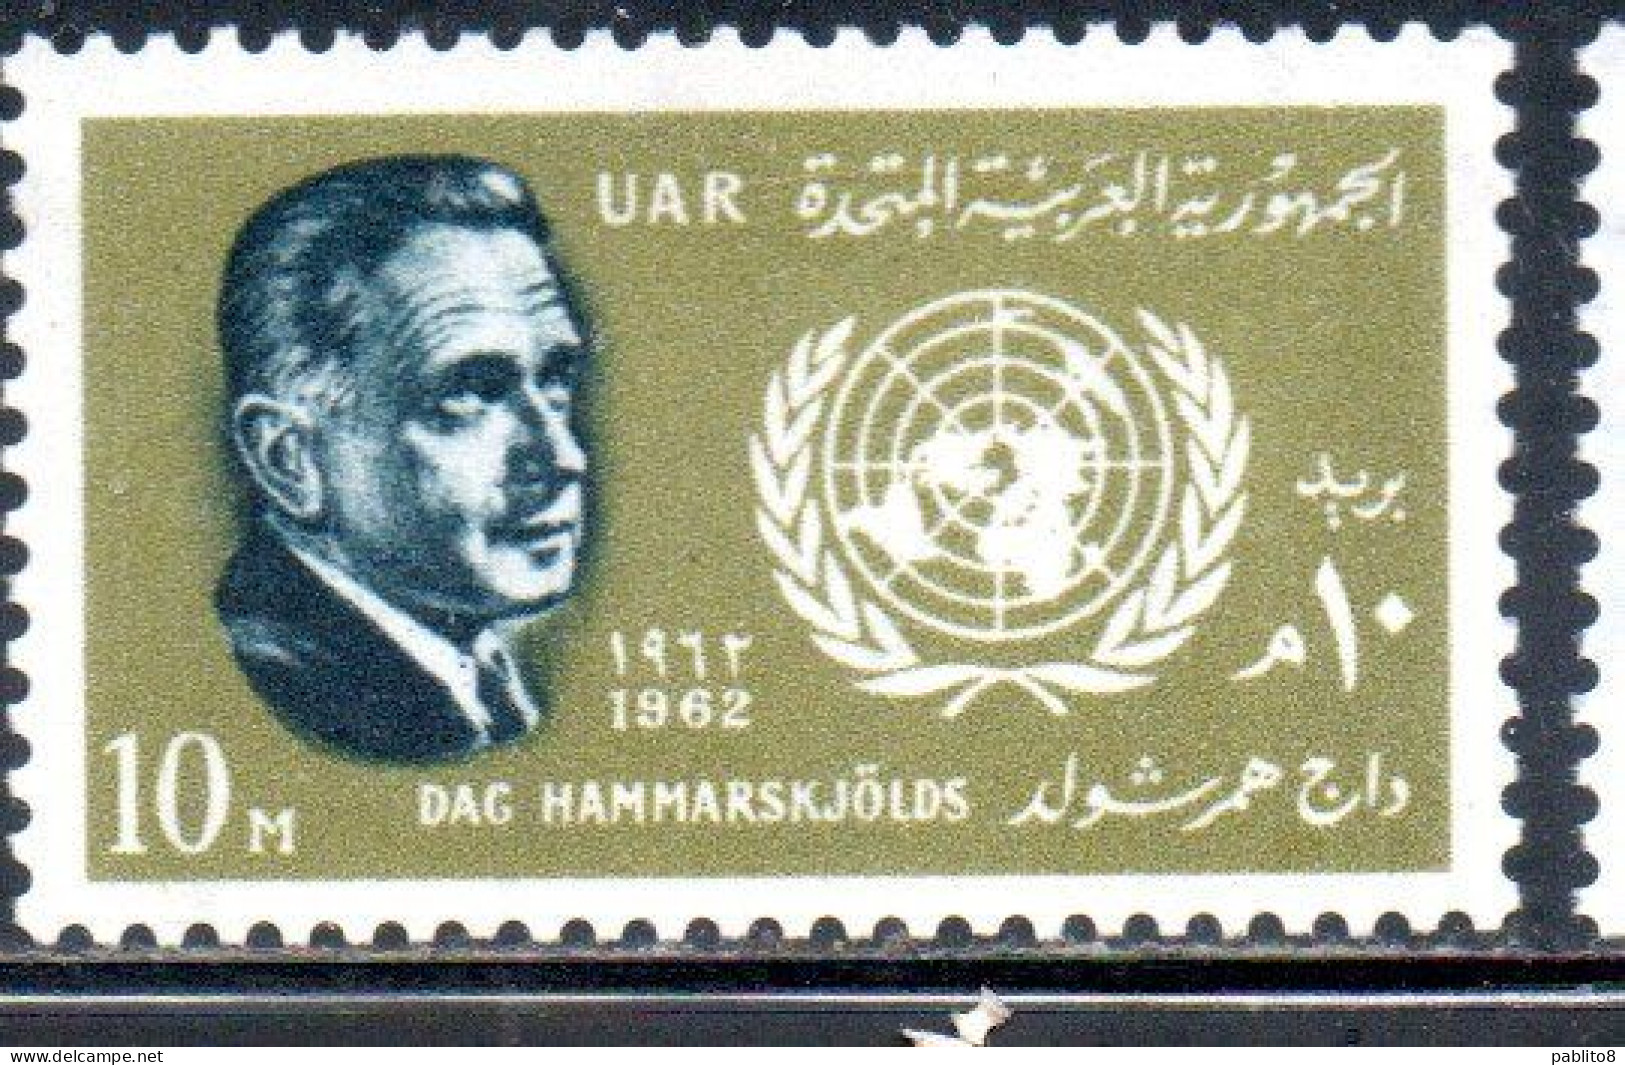 UAR EGYPT EGITTO 1962 DAG HAMMARSKJOLD SECRETARY GENERAL OF THE UN ONU 10m MH - Nuovi